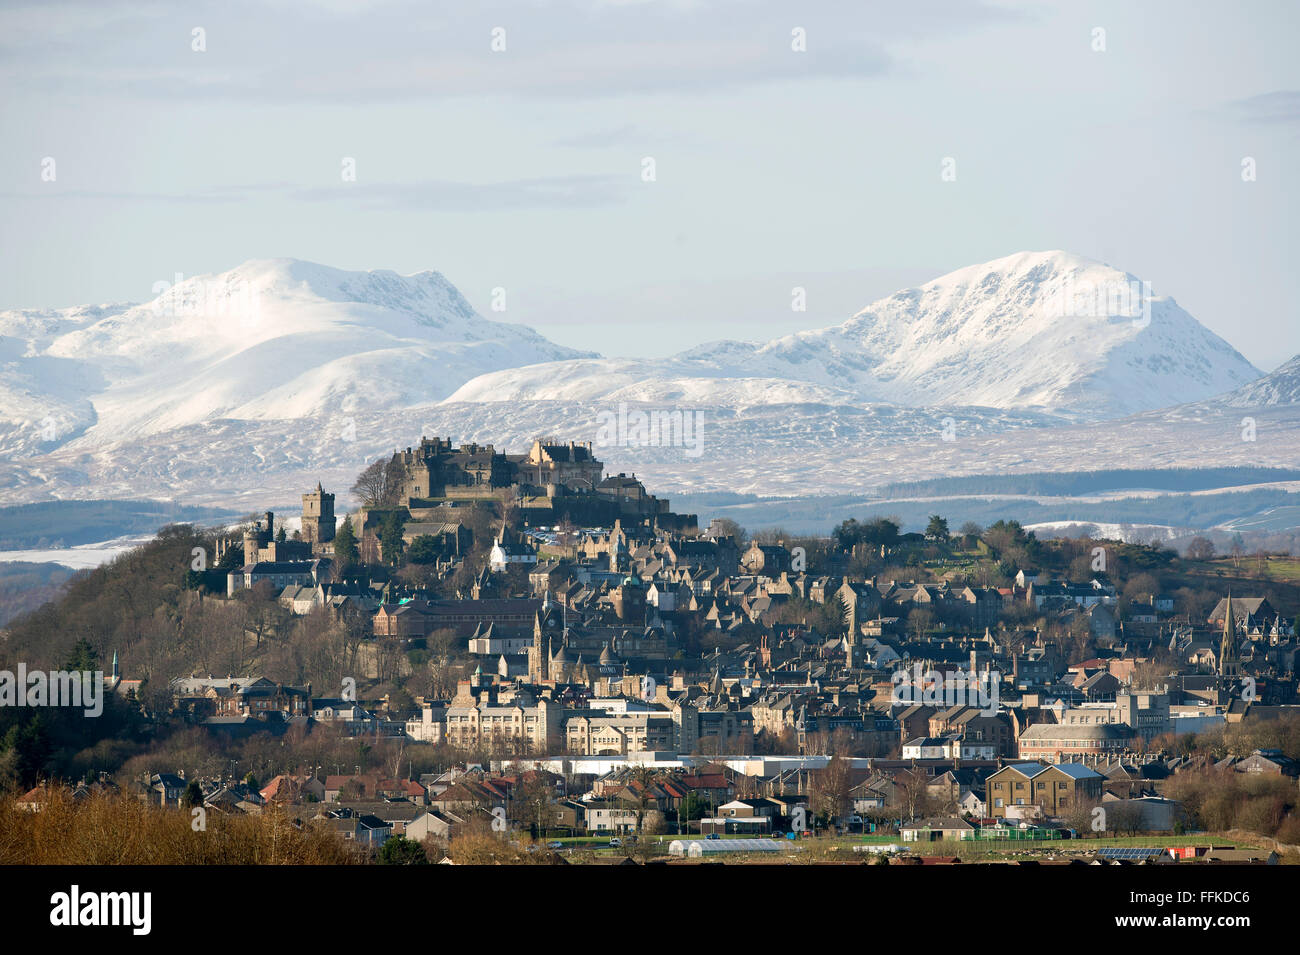 Il 15 febbraio 2016. Il Castello di Stirling e la città di Stirling, in Scozia con coperta di neve Stuc un Chroin e Ben Vorlich in distanza. Foto Stock